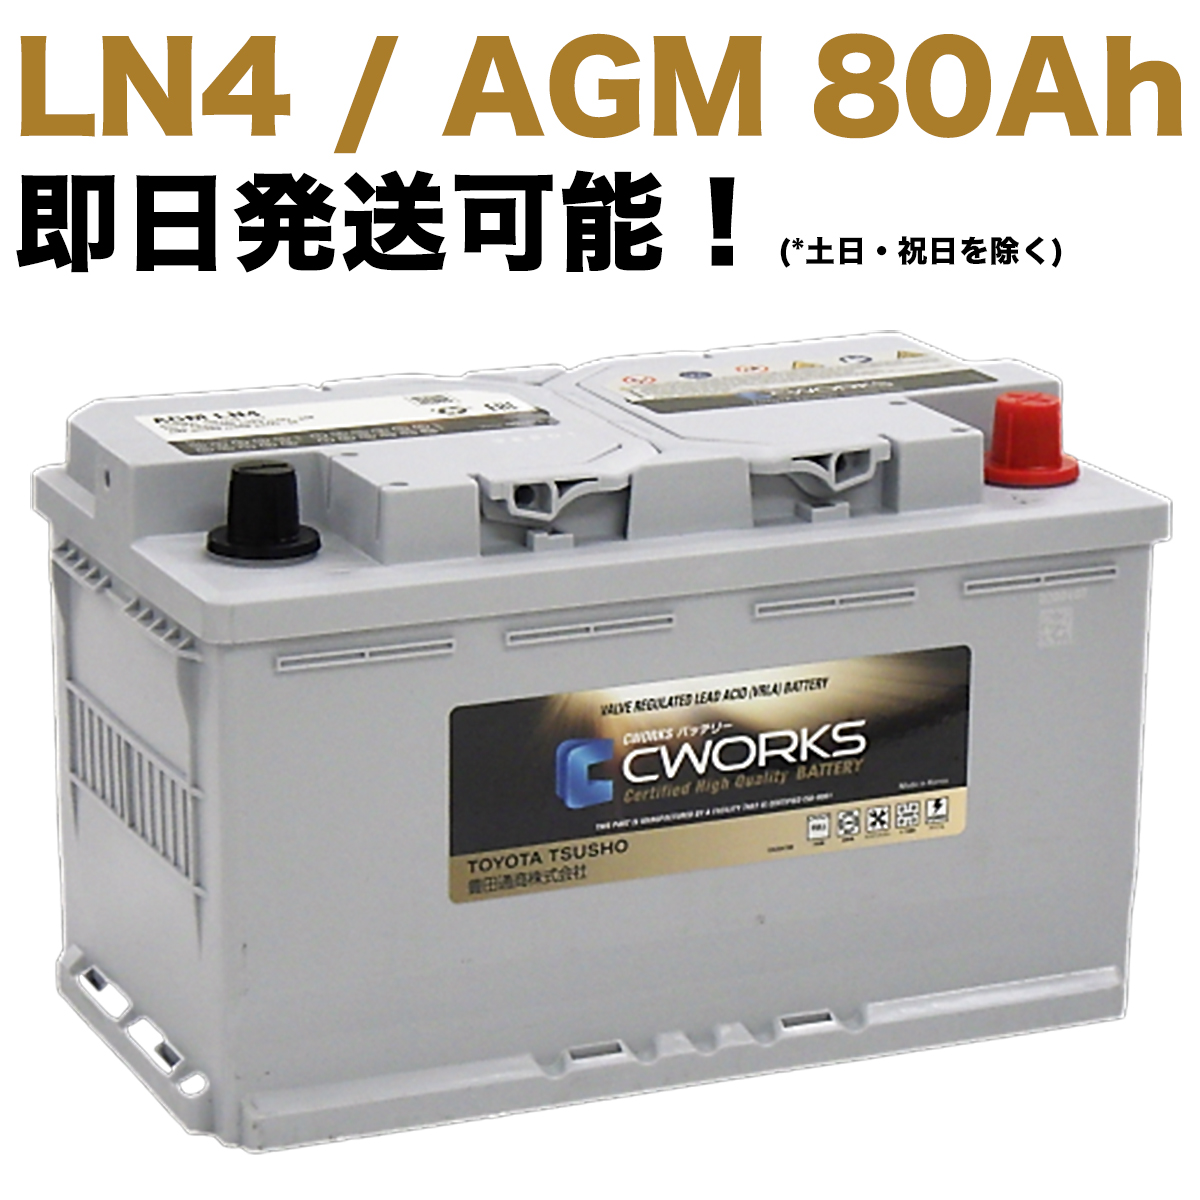 【保証付】新品 バッテリー L4 AGM 80Ah メルセデス ベンツ W463 G350d LDA-463348 Gクラス ゲレンデ A001982810828 A0009822108 LN4 CWORKS 580901084｜e-benzparts